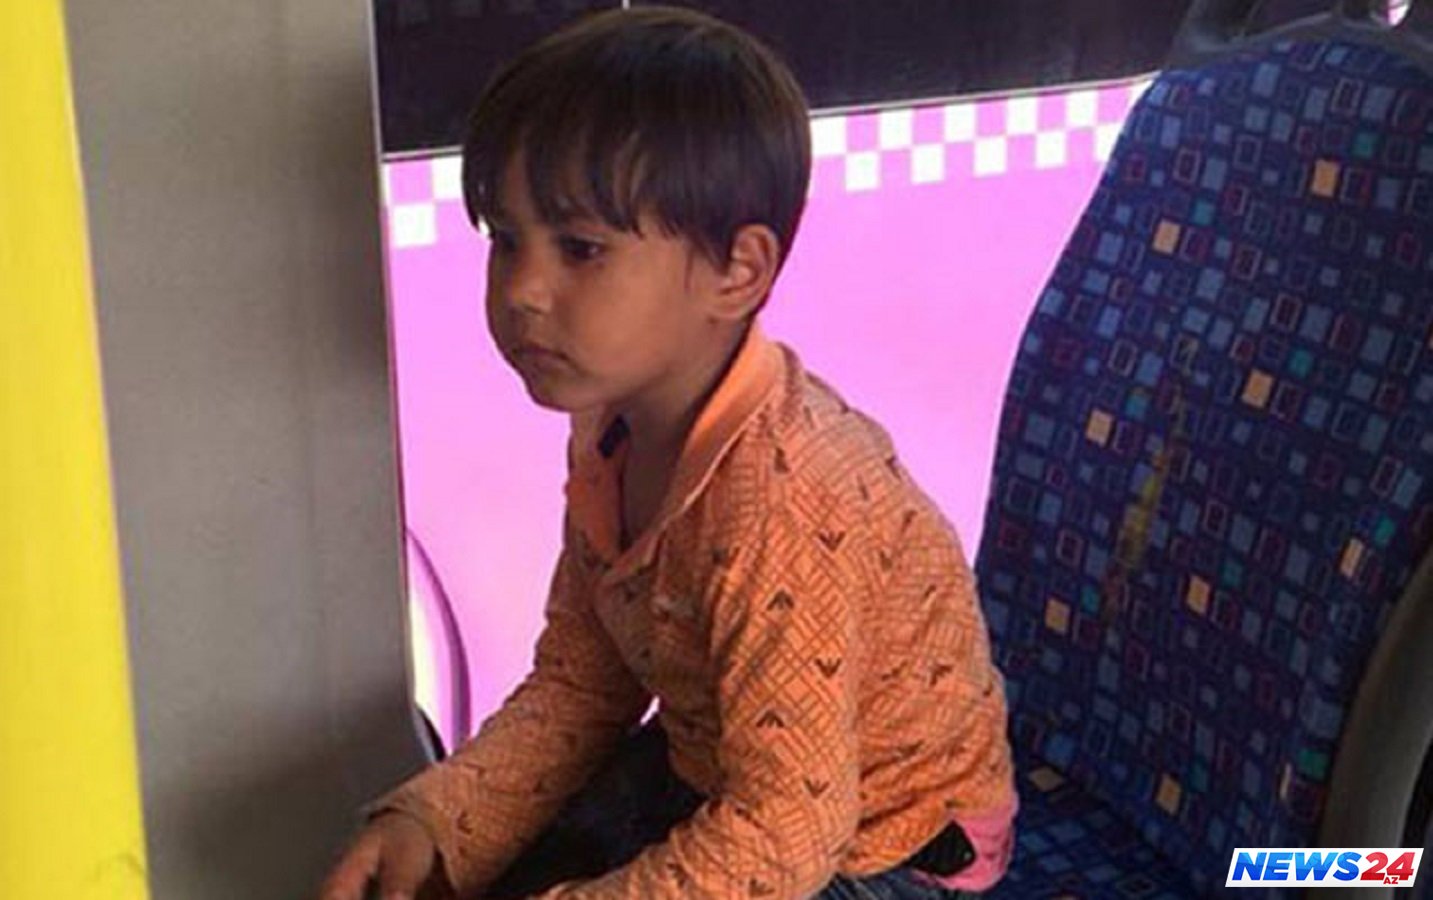 Bakıda avtobusda uşaq tapıldı: Ailəsi axtarılır - FOTO 